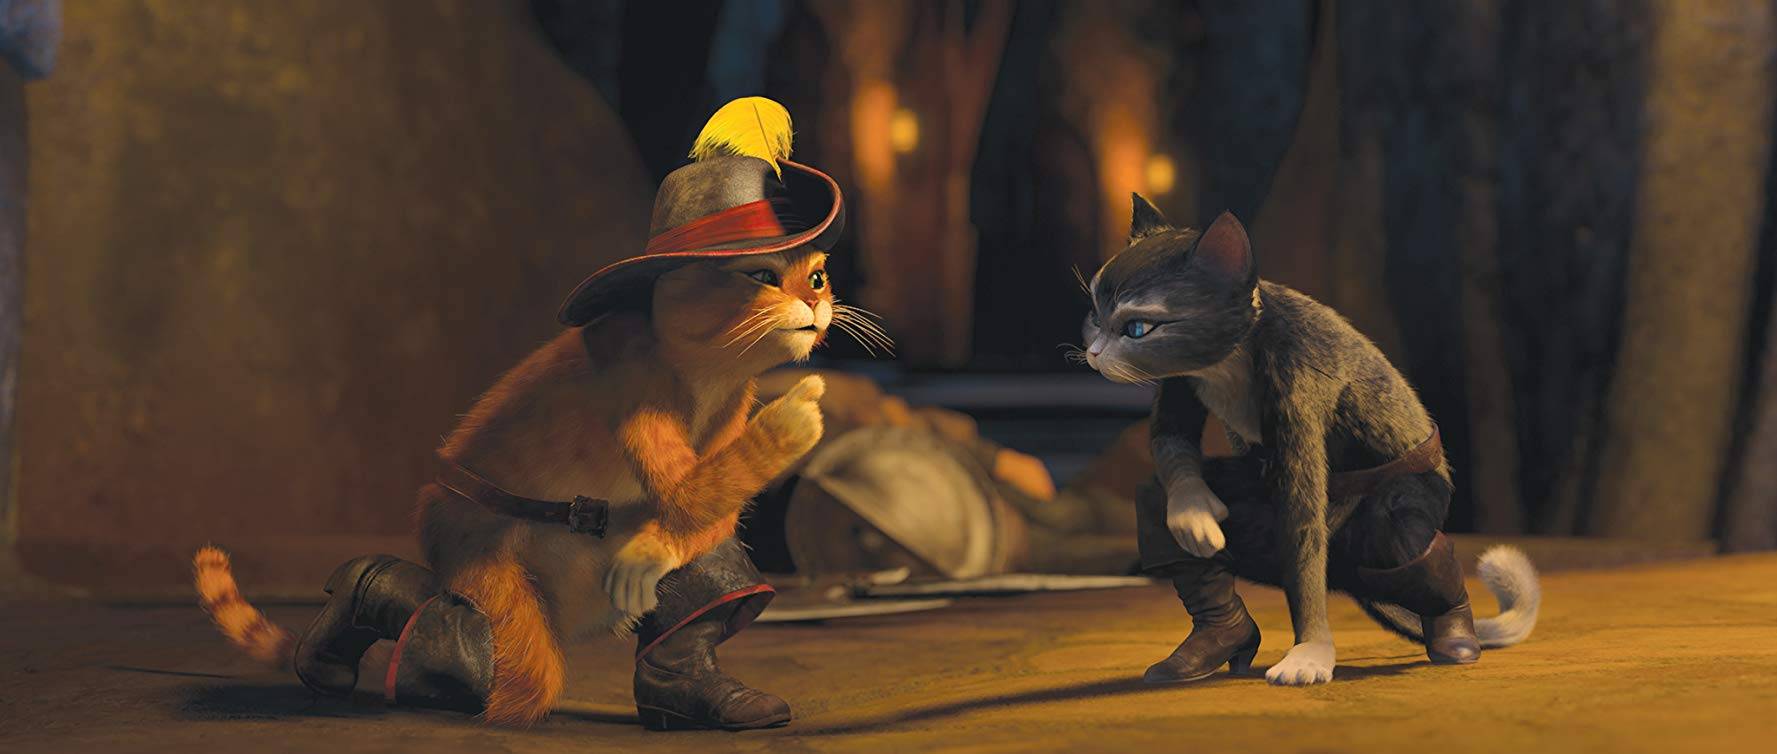 СМИ: DreamWorks запускает в производство вторую часть «Кота в сапогах»